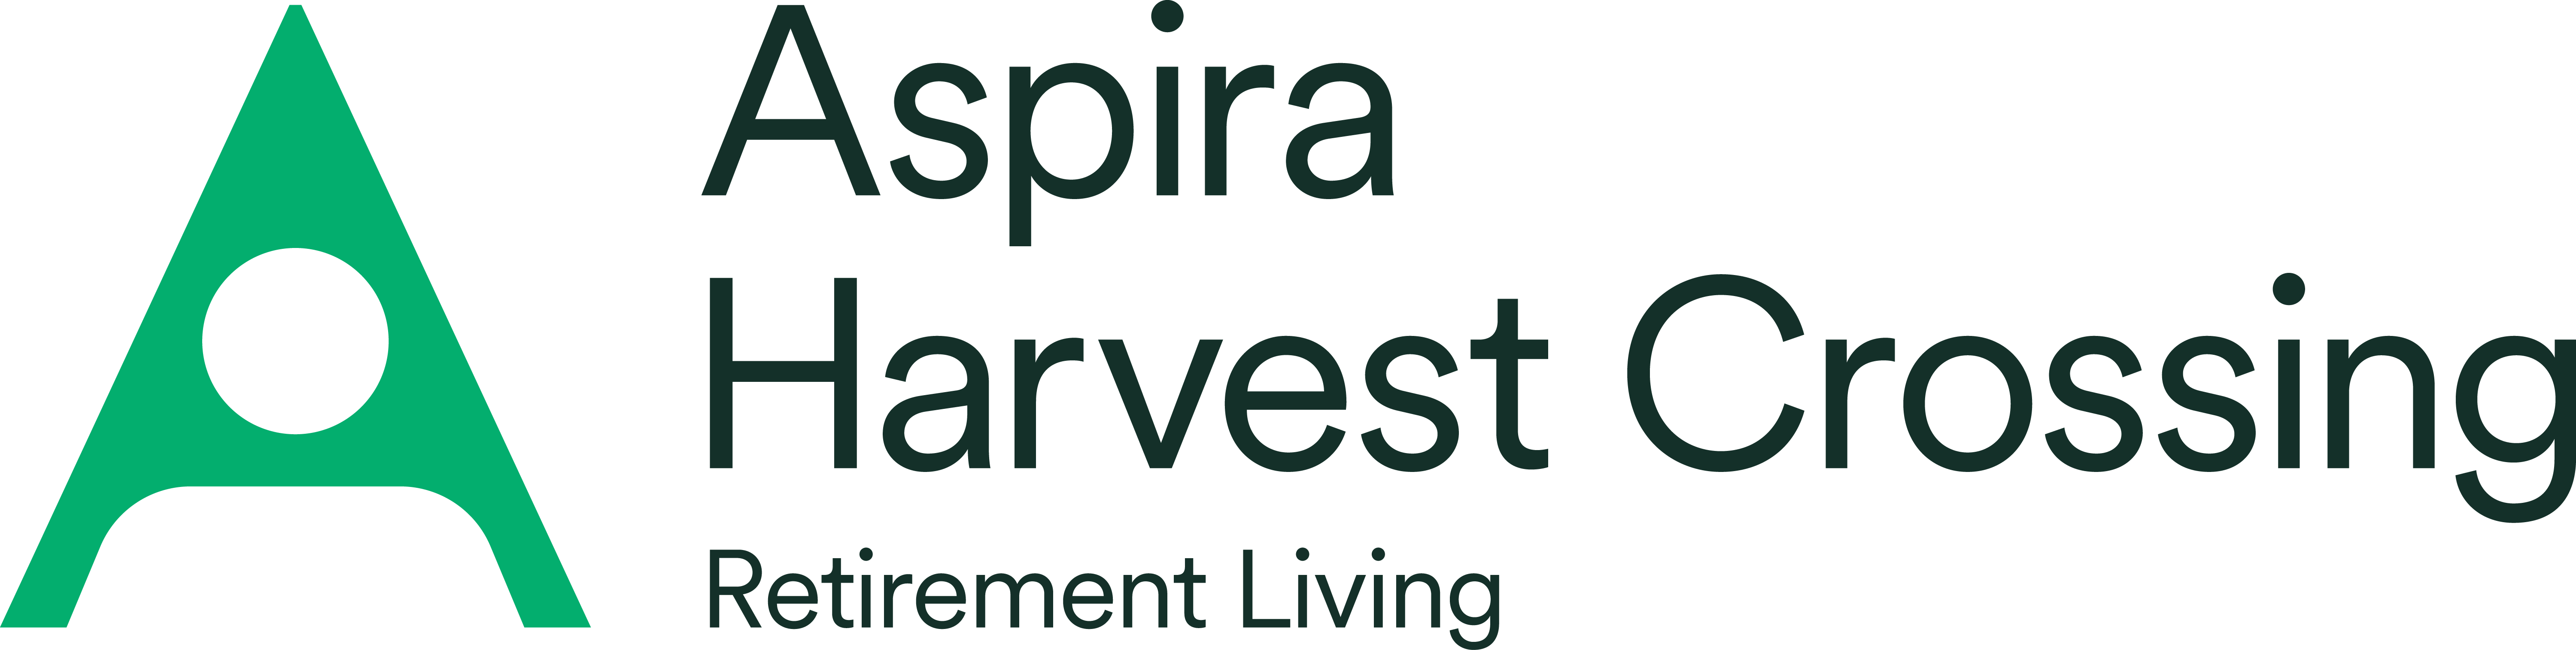 Aspira-logo-Harvest_Crossing